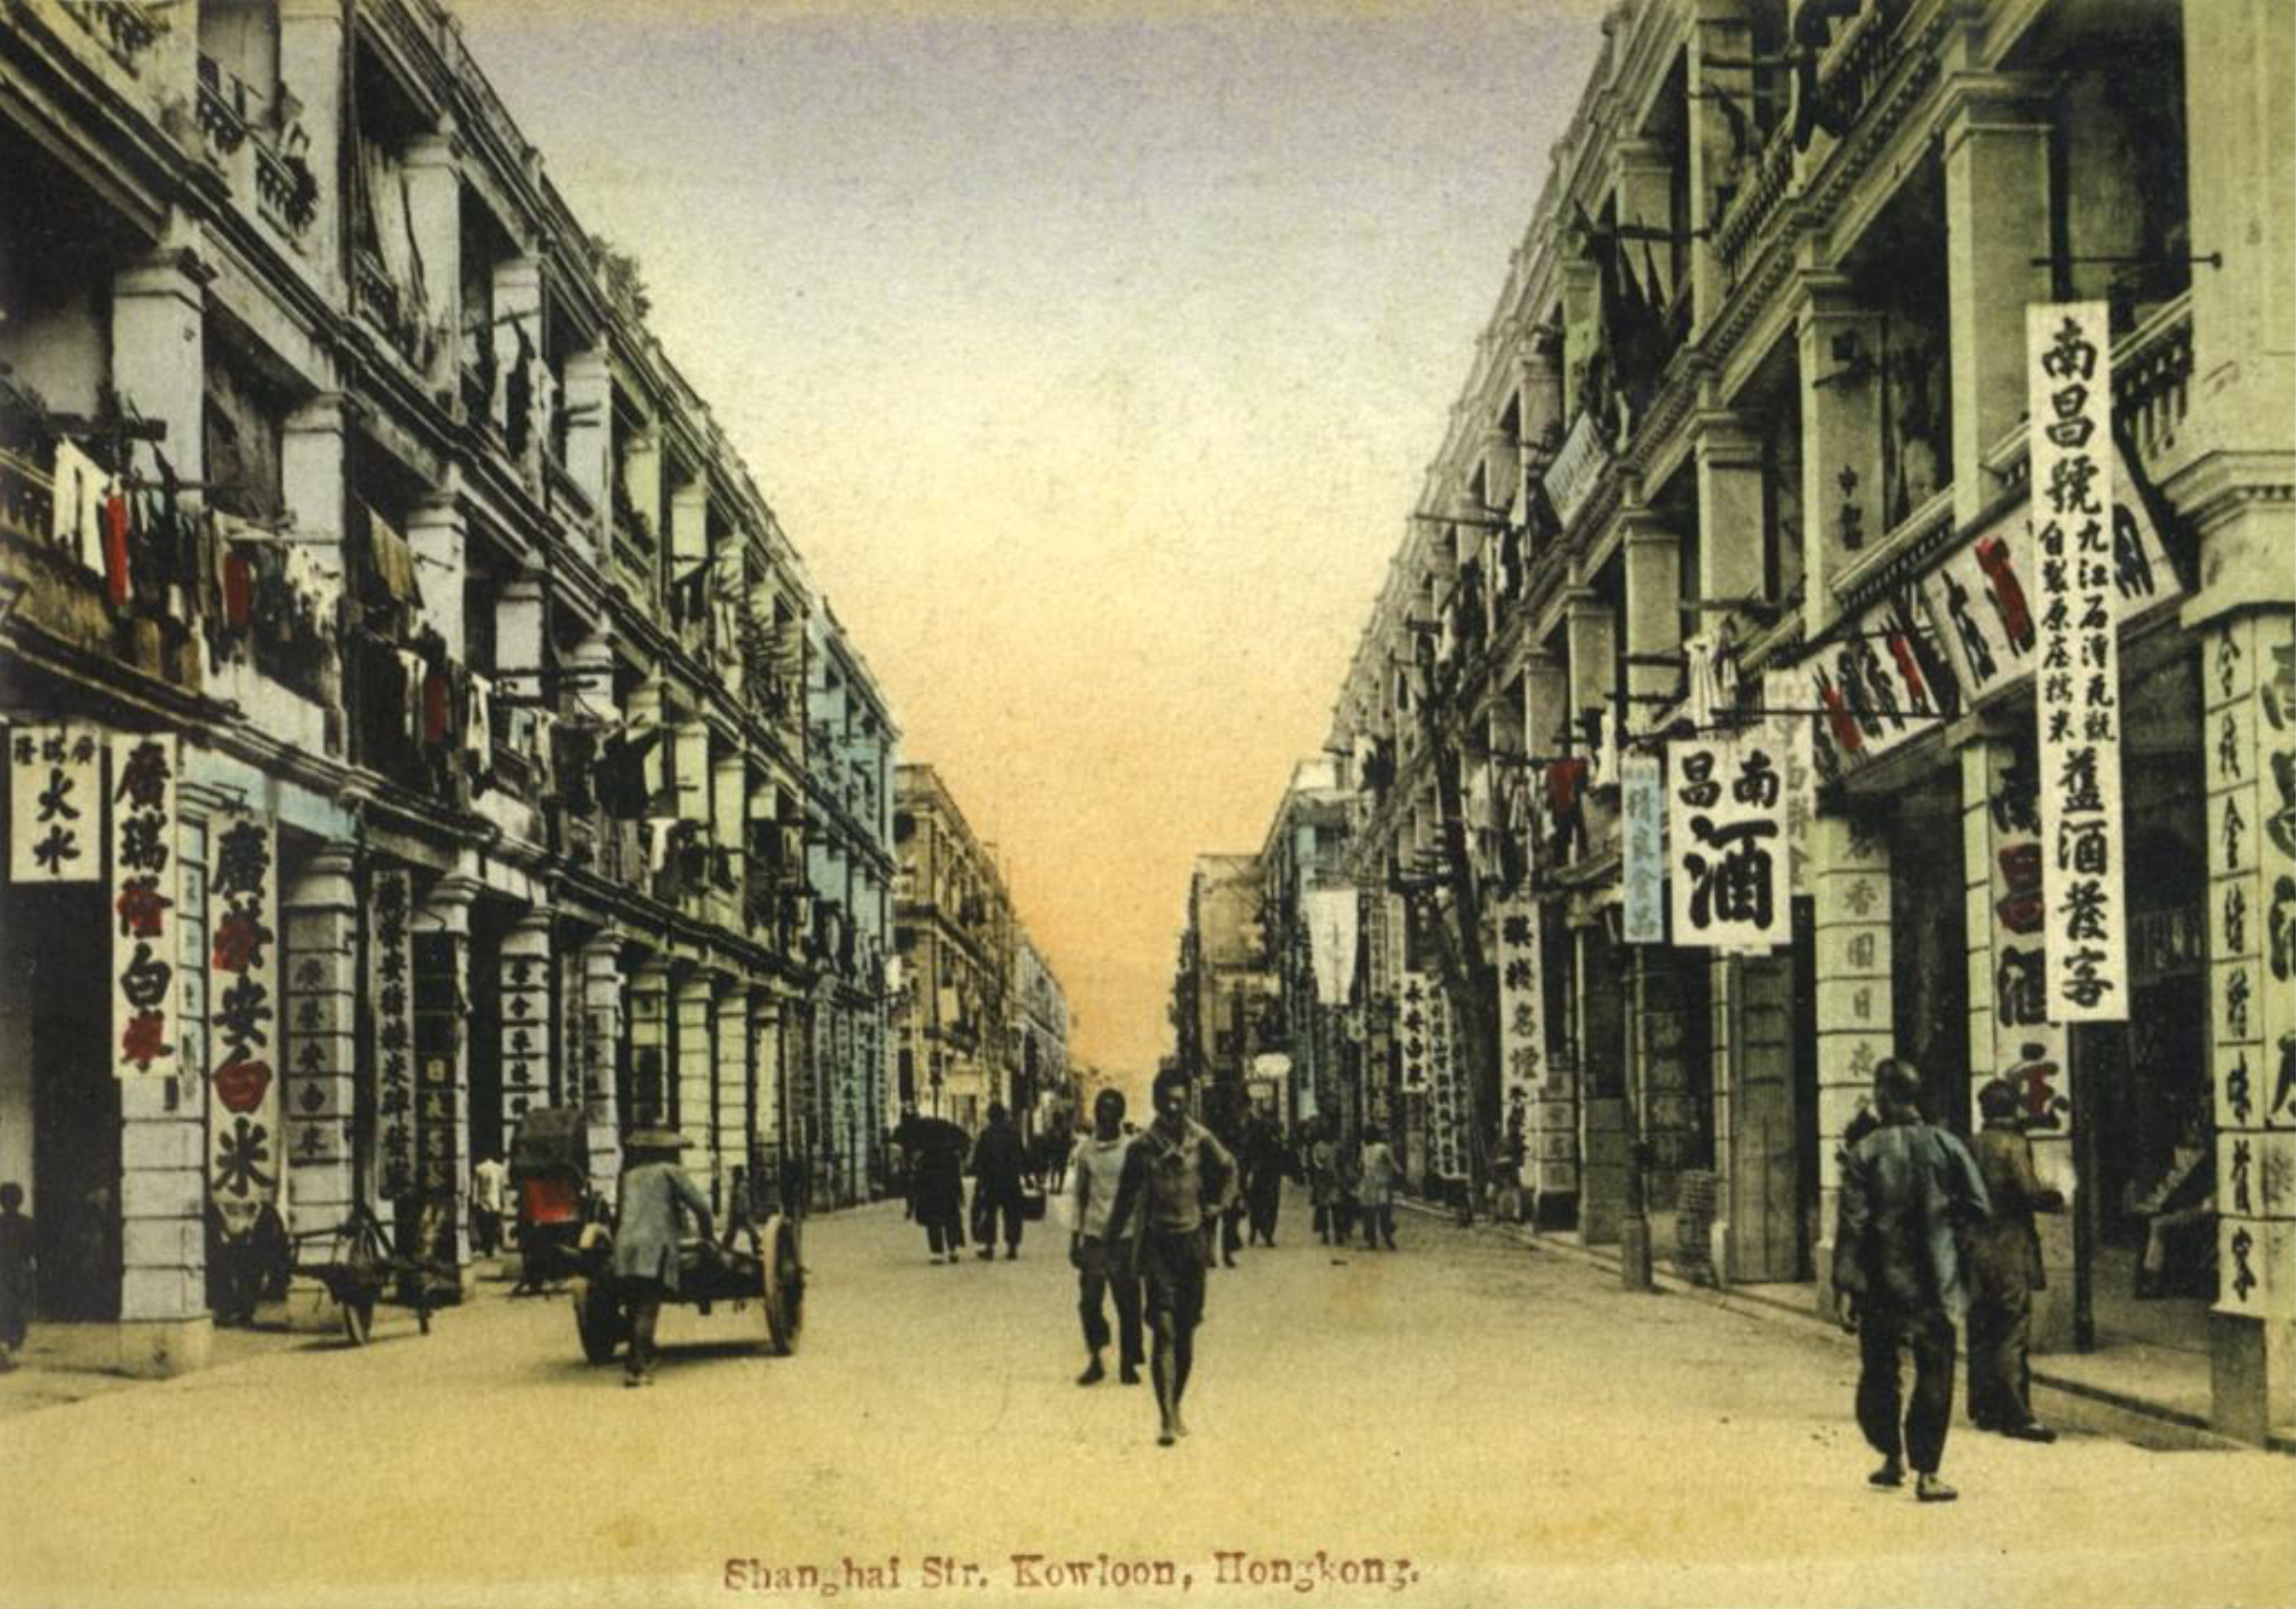 图为约1922年上海街的面貌，位于亚皆老街和山东街之间的区域，邻近上海街600-626号。 (相片来源:《香江九龙》， 作者:郑宝鸿, 2010)